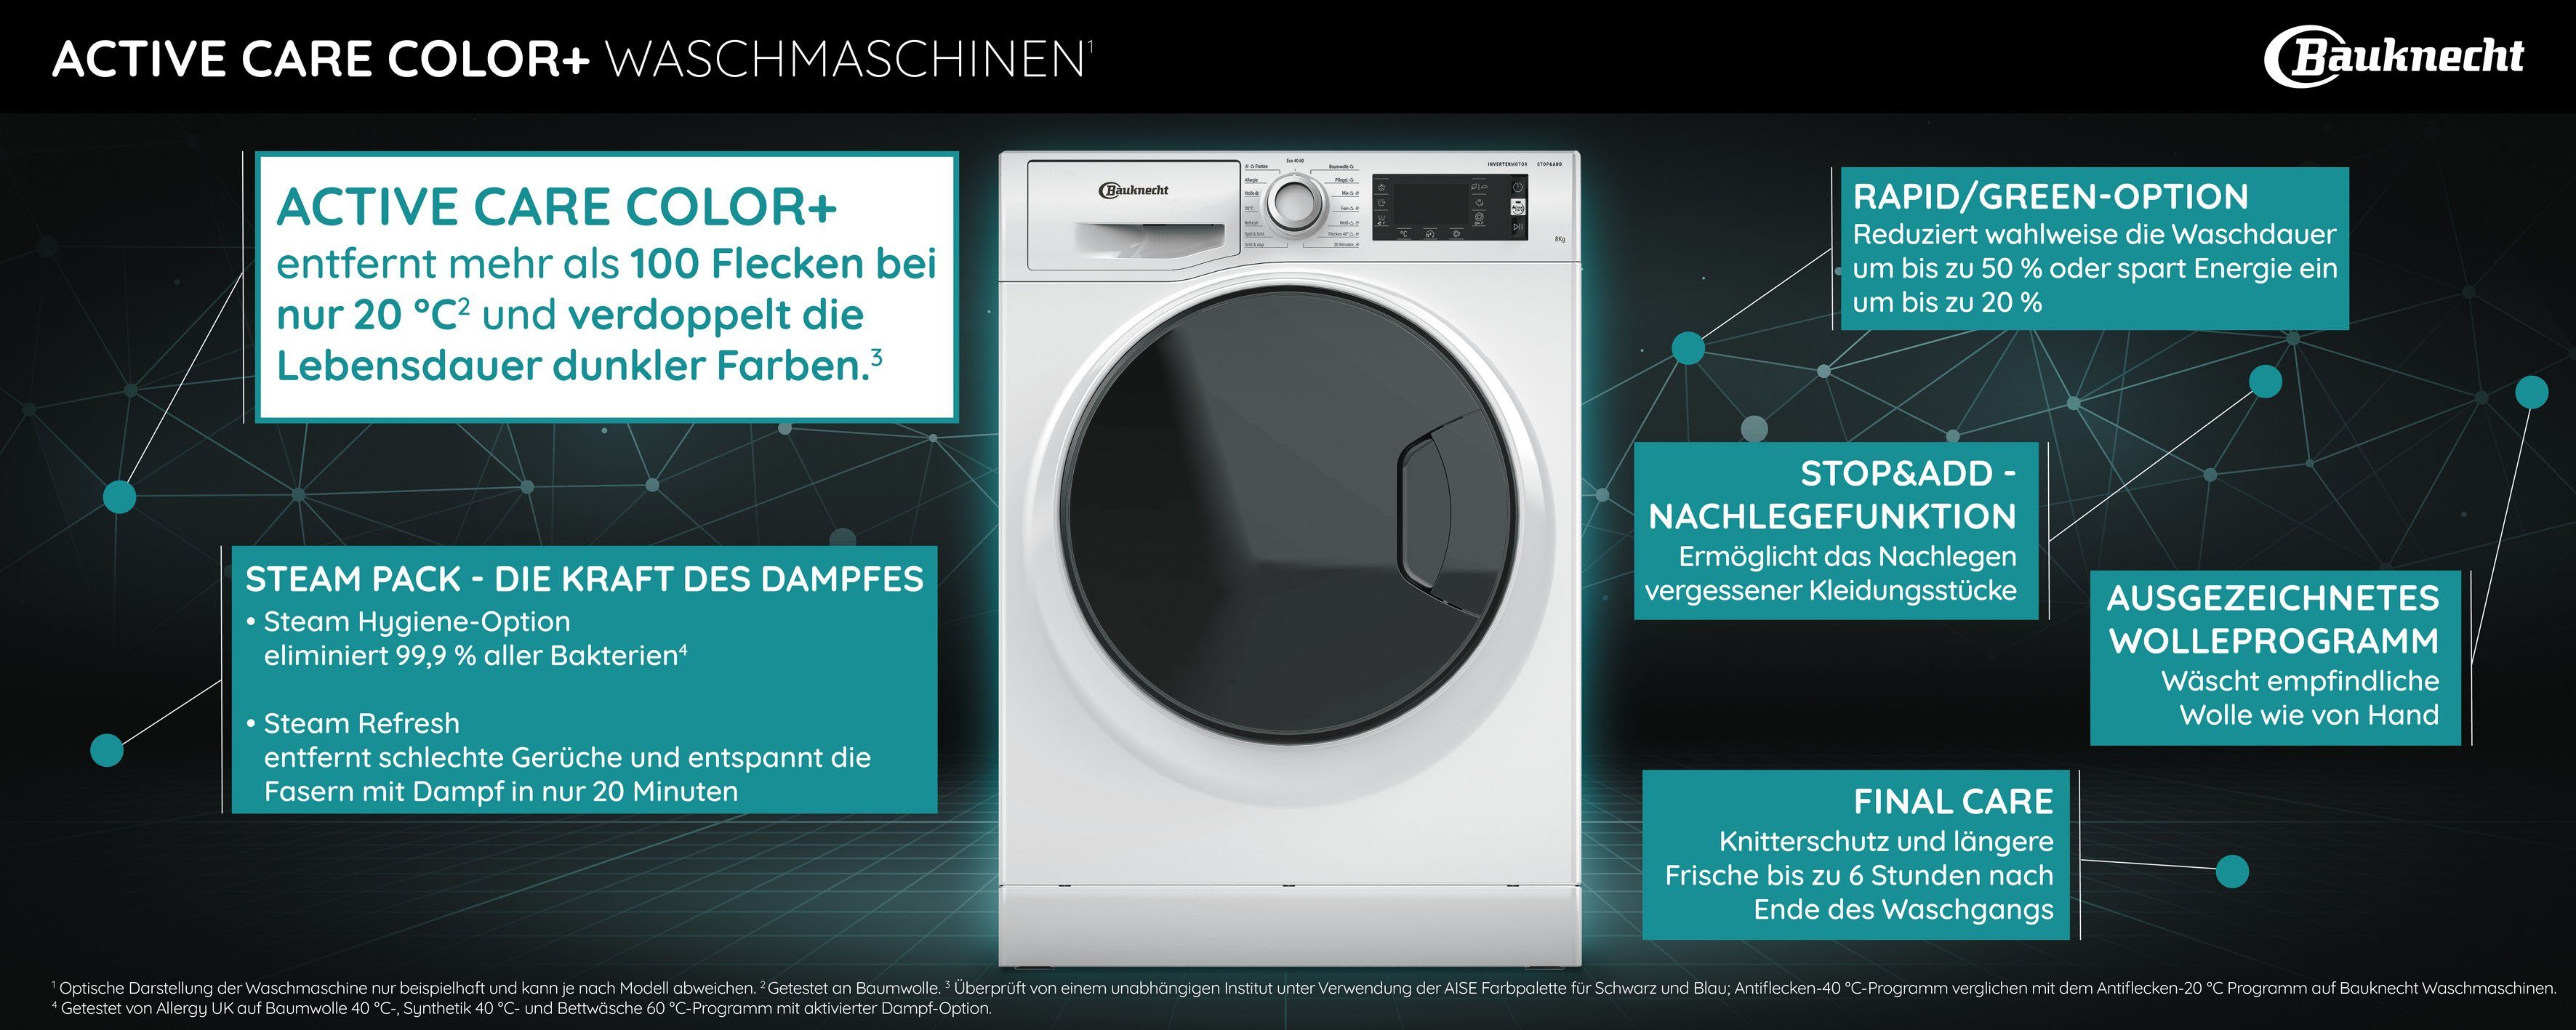 BAUKNECHT Waschmaschine WM Elite 923 kg, 1400 PS, 9 U/min